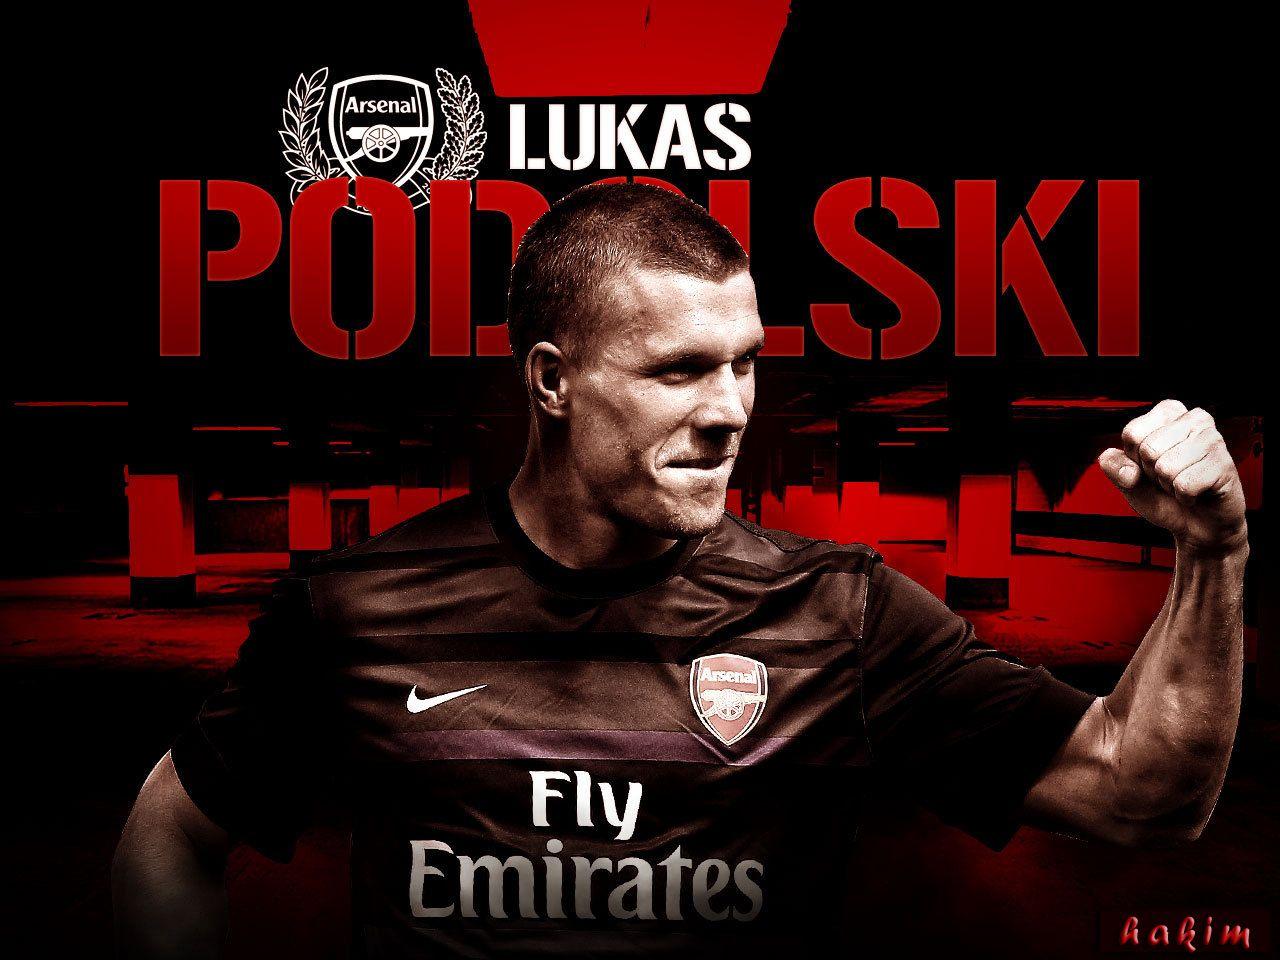 Lukas Podolski Arsenal 2012 2013 HD Best Wallpaper. For The Home